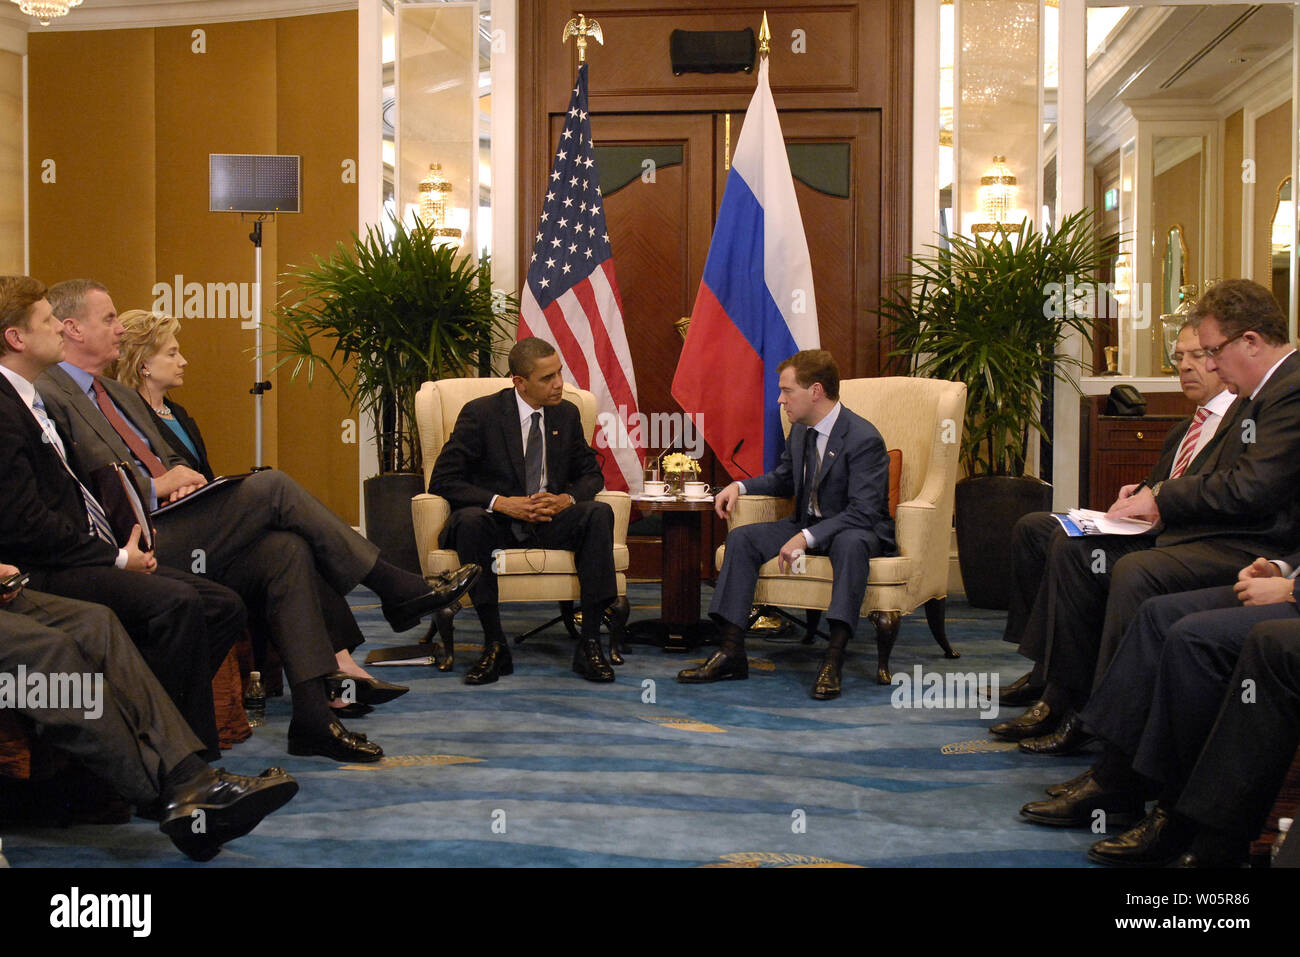 Us-Präsident Barack Obama (L) trifft sich mit seinem Russischen Amtskollegen Dmitri Medwedew während der Asia-Pacific Economic Cooperation (APEC) Leaders Summit in Singapur am 15. November 2009. UPI/Alex Volgin Stockfoto